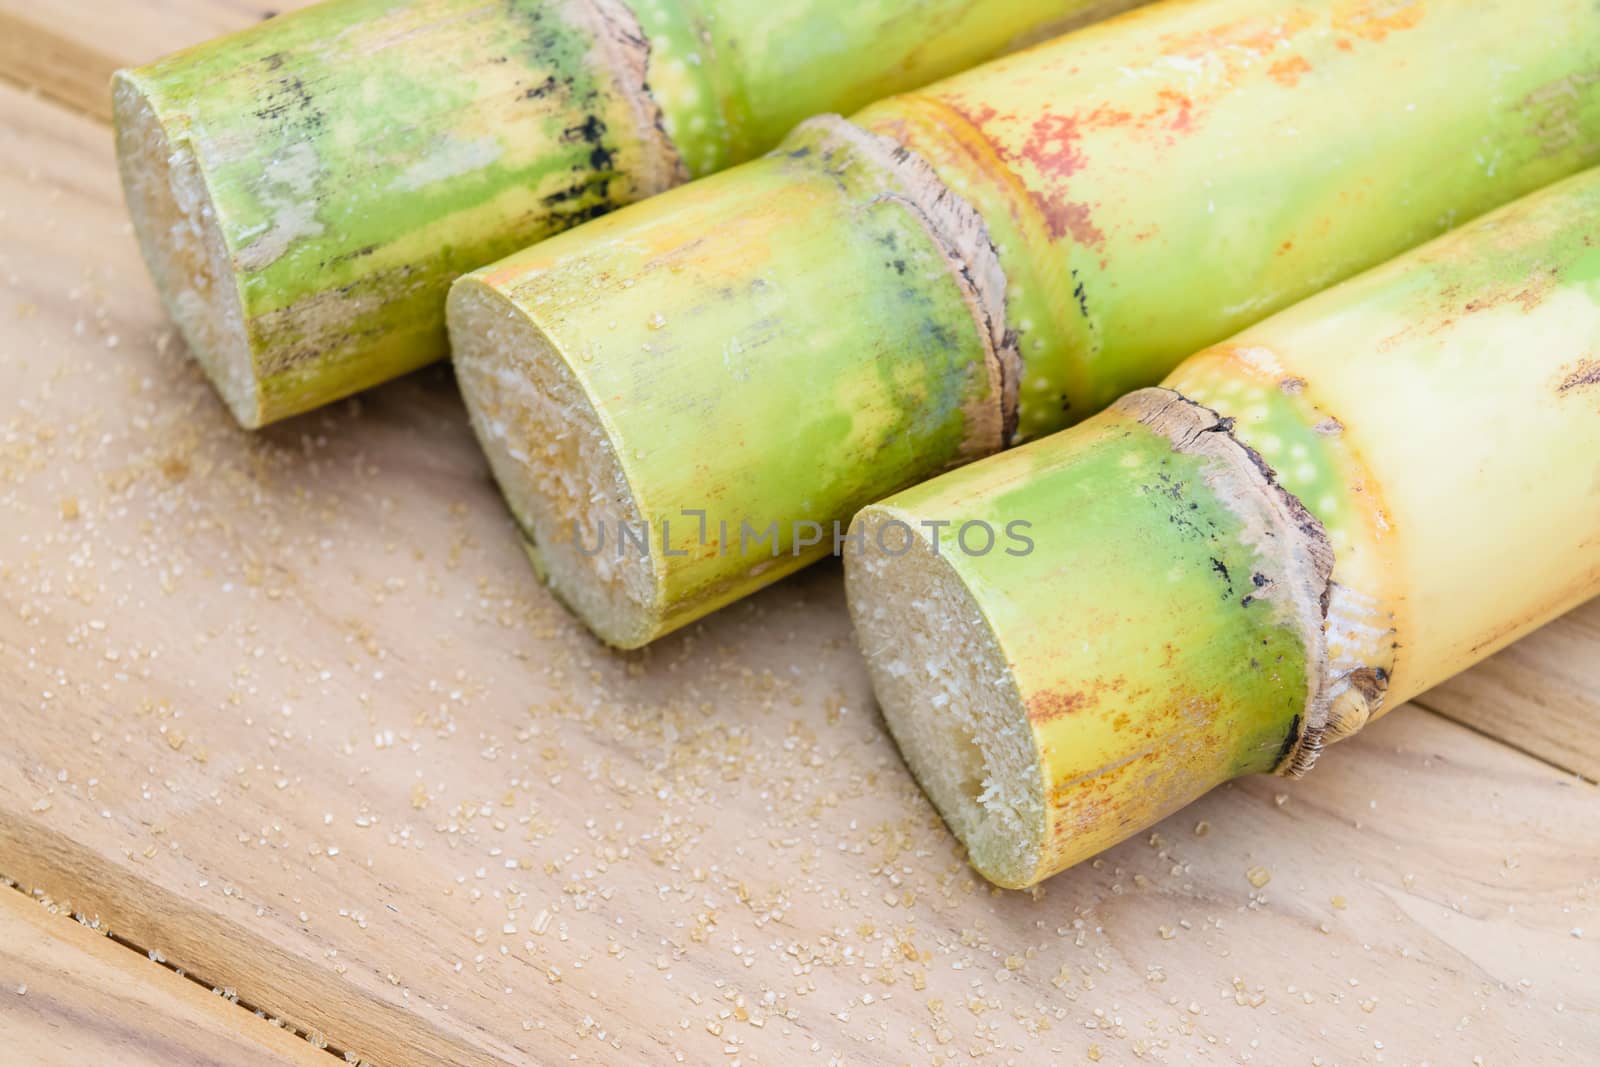 brown sugar and sugarcane by naramit